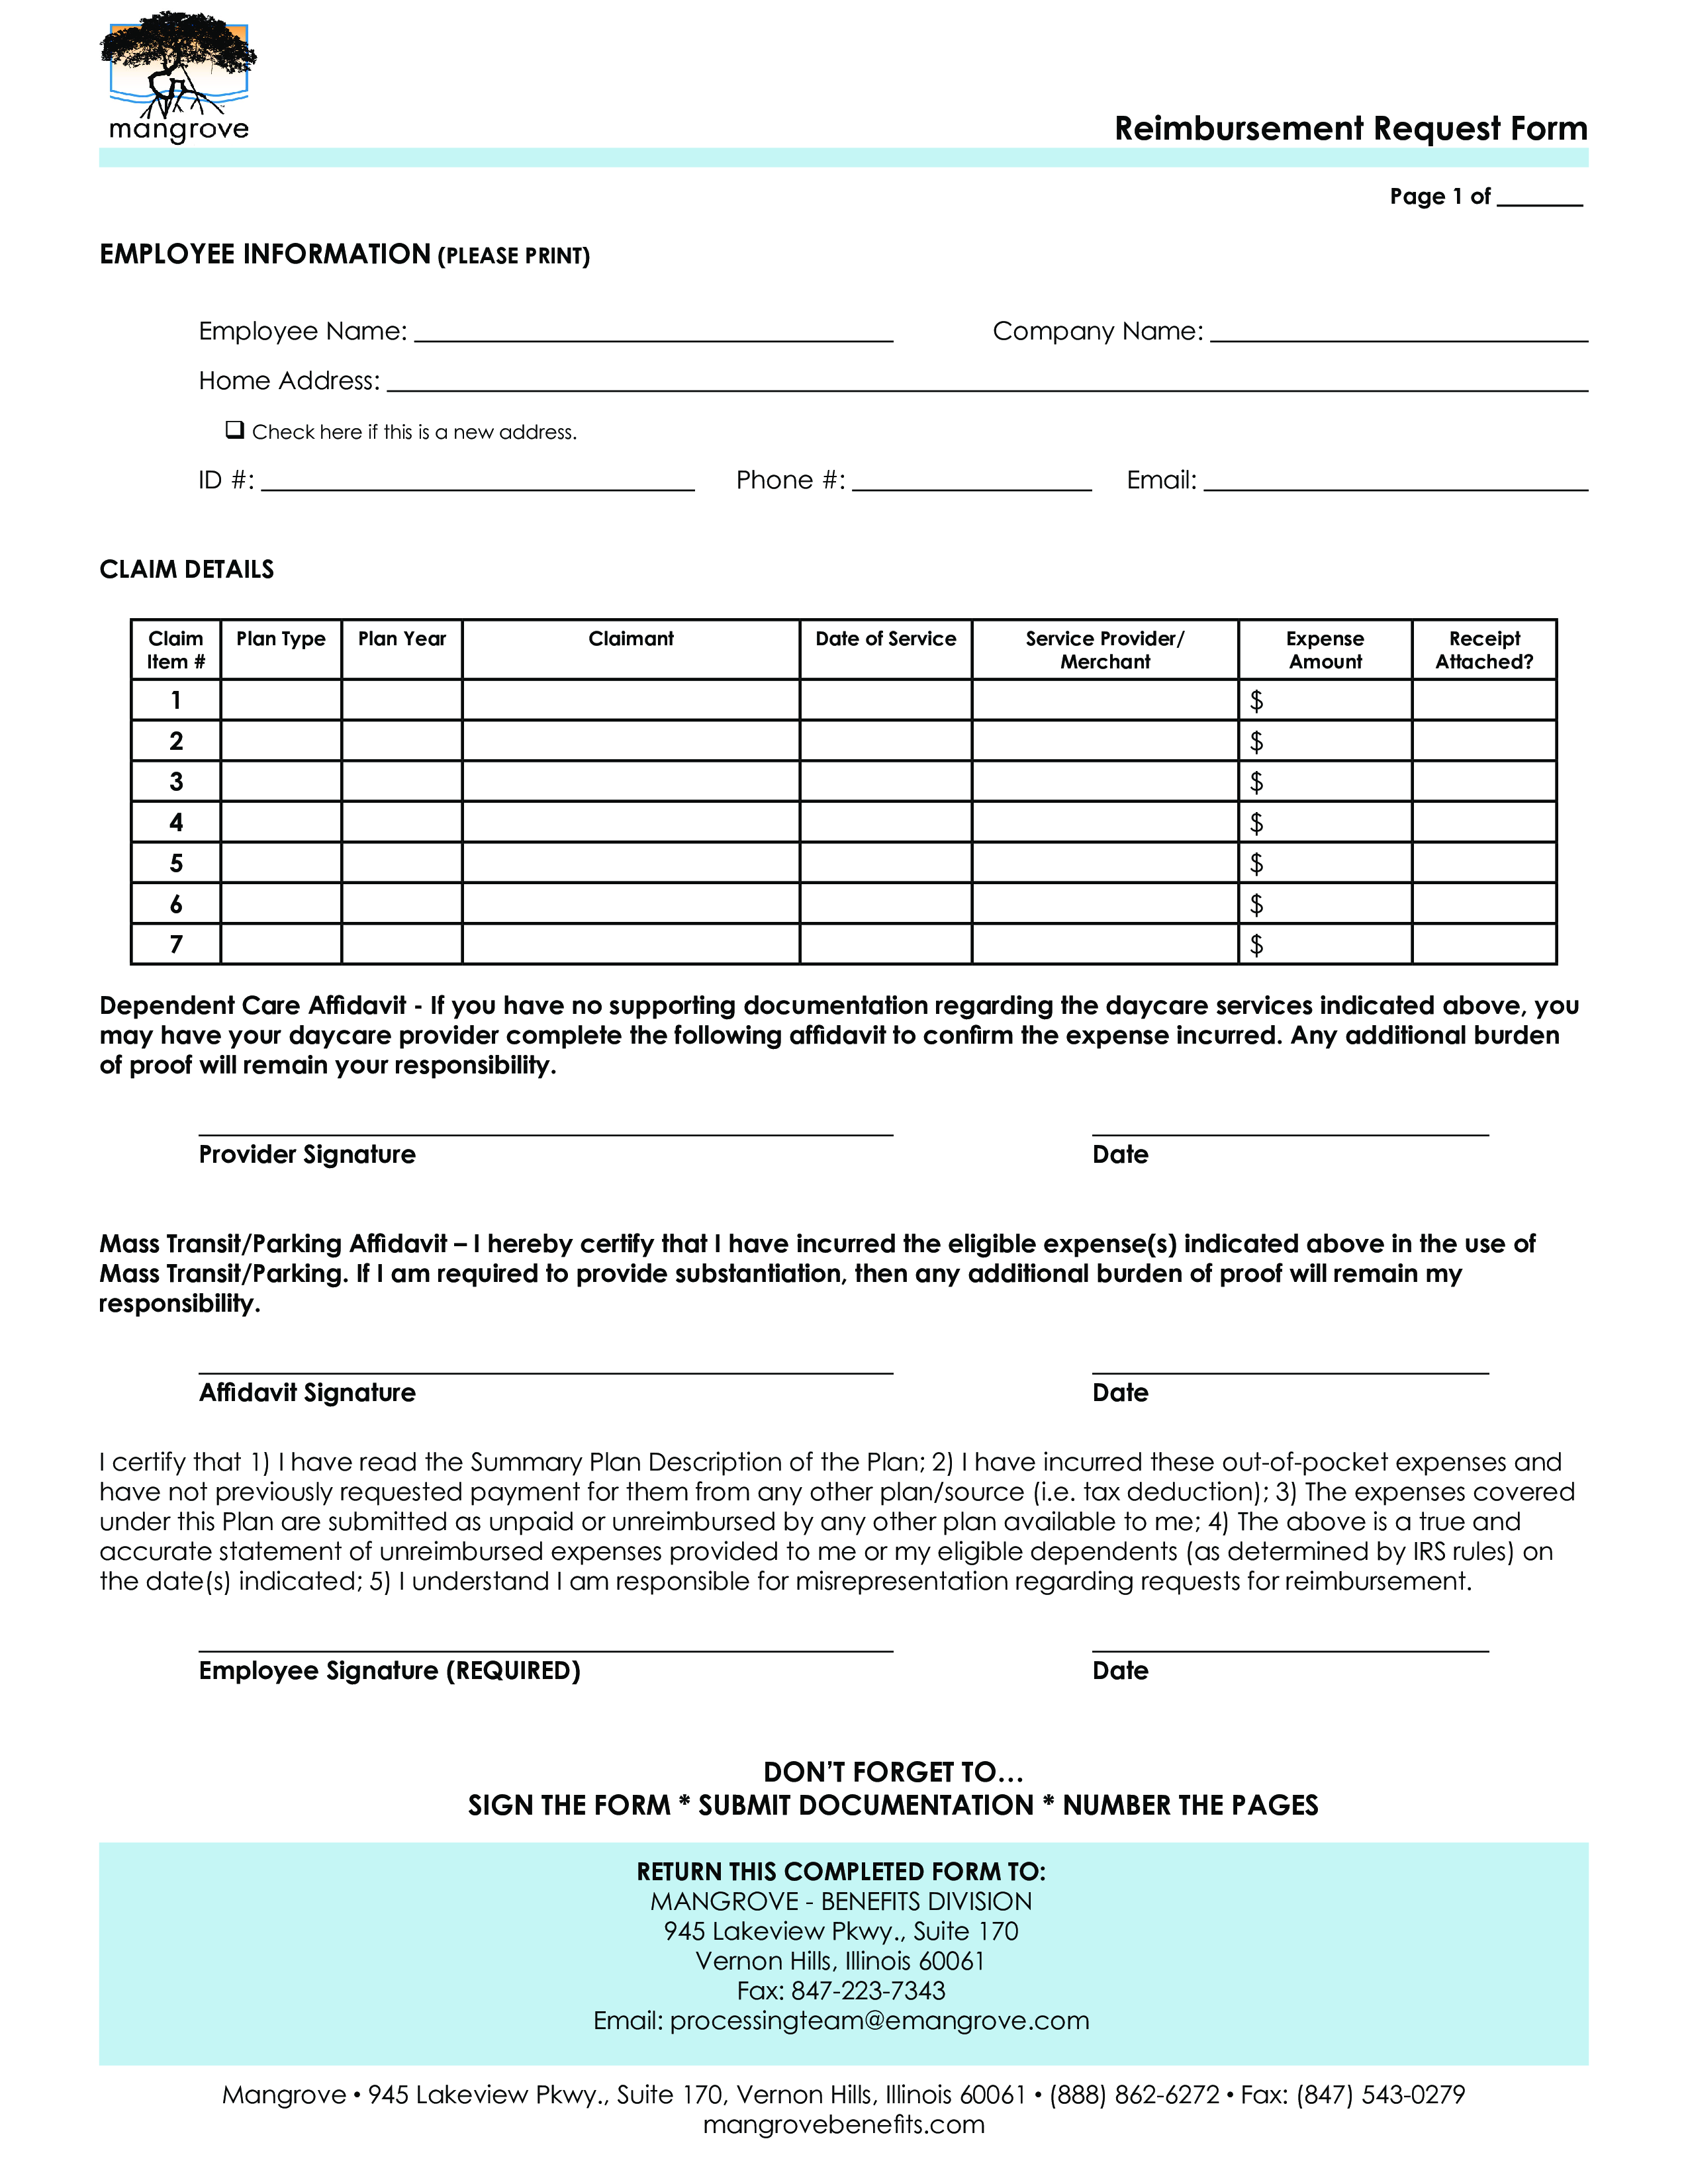 reimbursement request form template